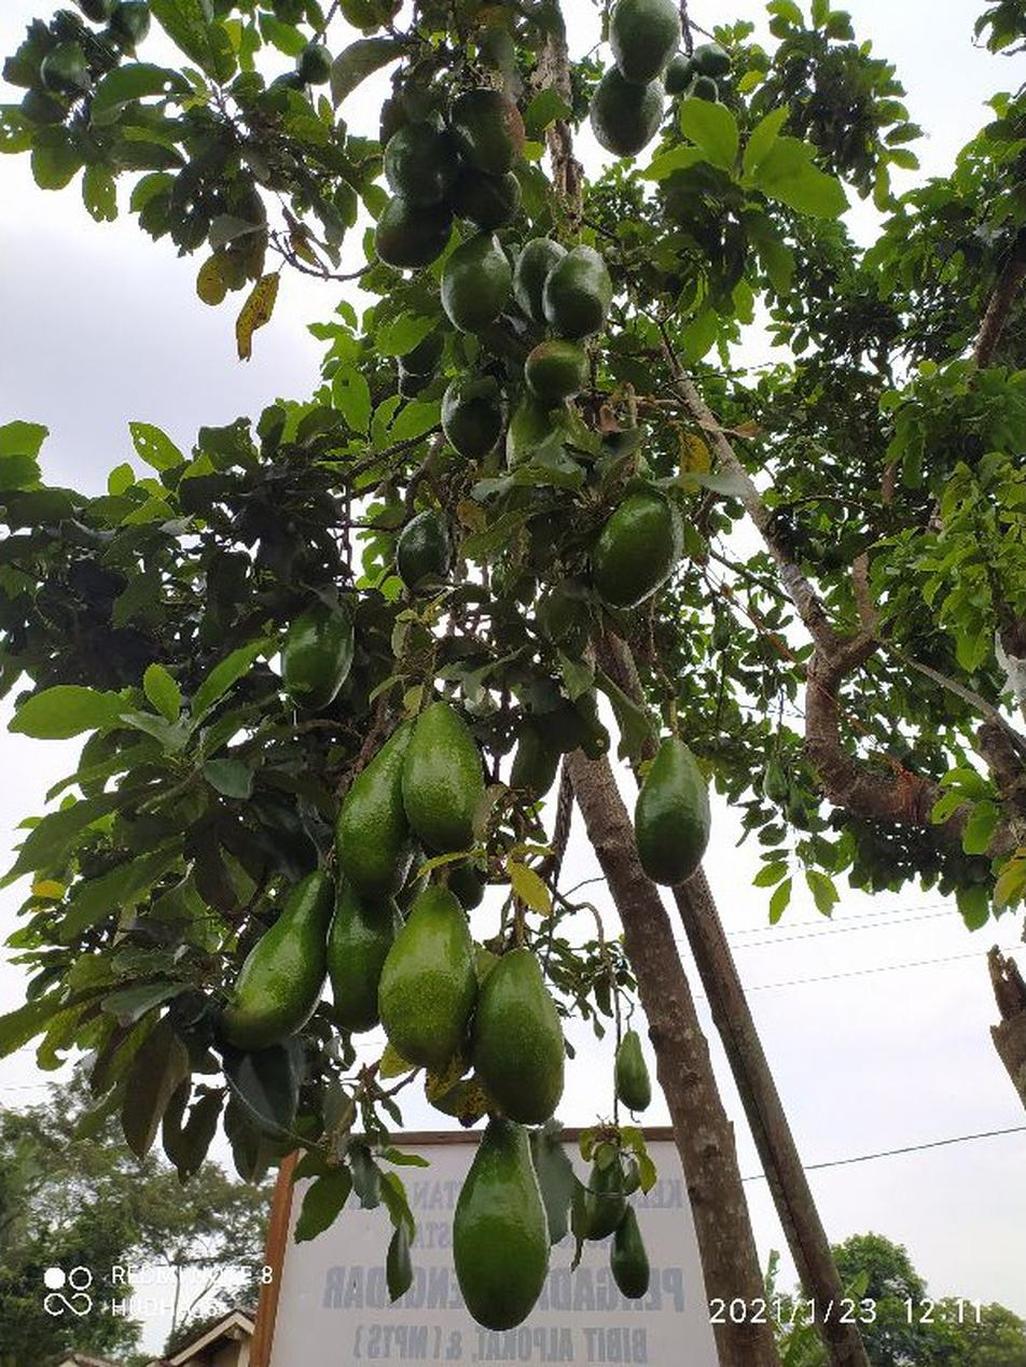 Gambar Produk bibit buah alpukat siger sibatu Bojonegoro